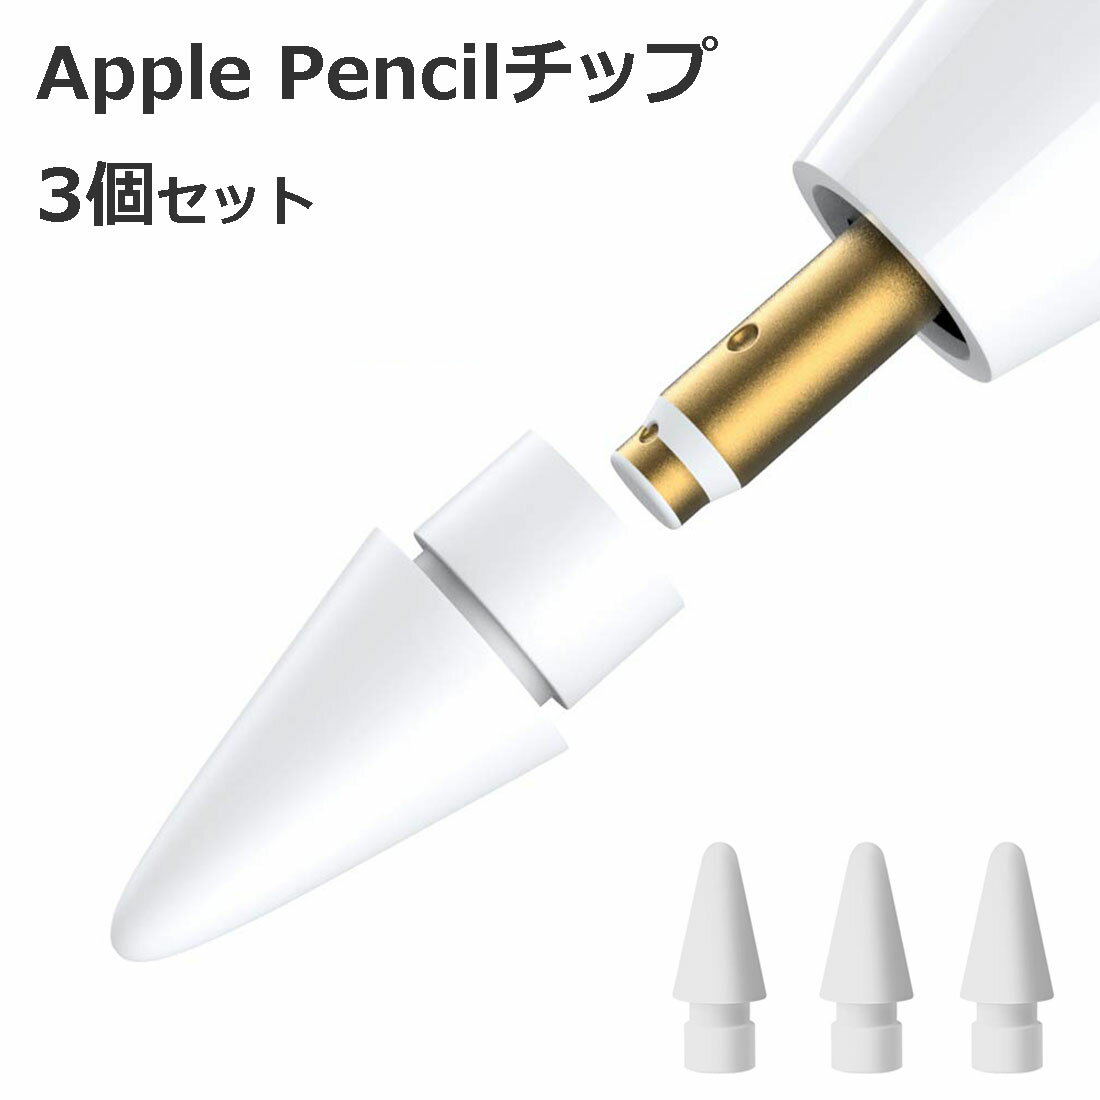 【3個入】 Apple Pencil チップ ペン先 アップルペンシル Appleペンシル キャップ 交換用 芯 iPad Pro Mini 第一世代 第二世代 第1世代 第2世代 ホワイト 白 White Agenstar